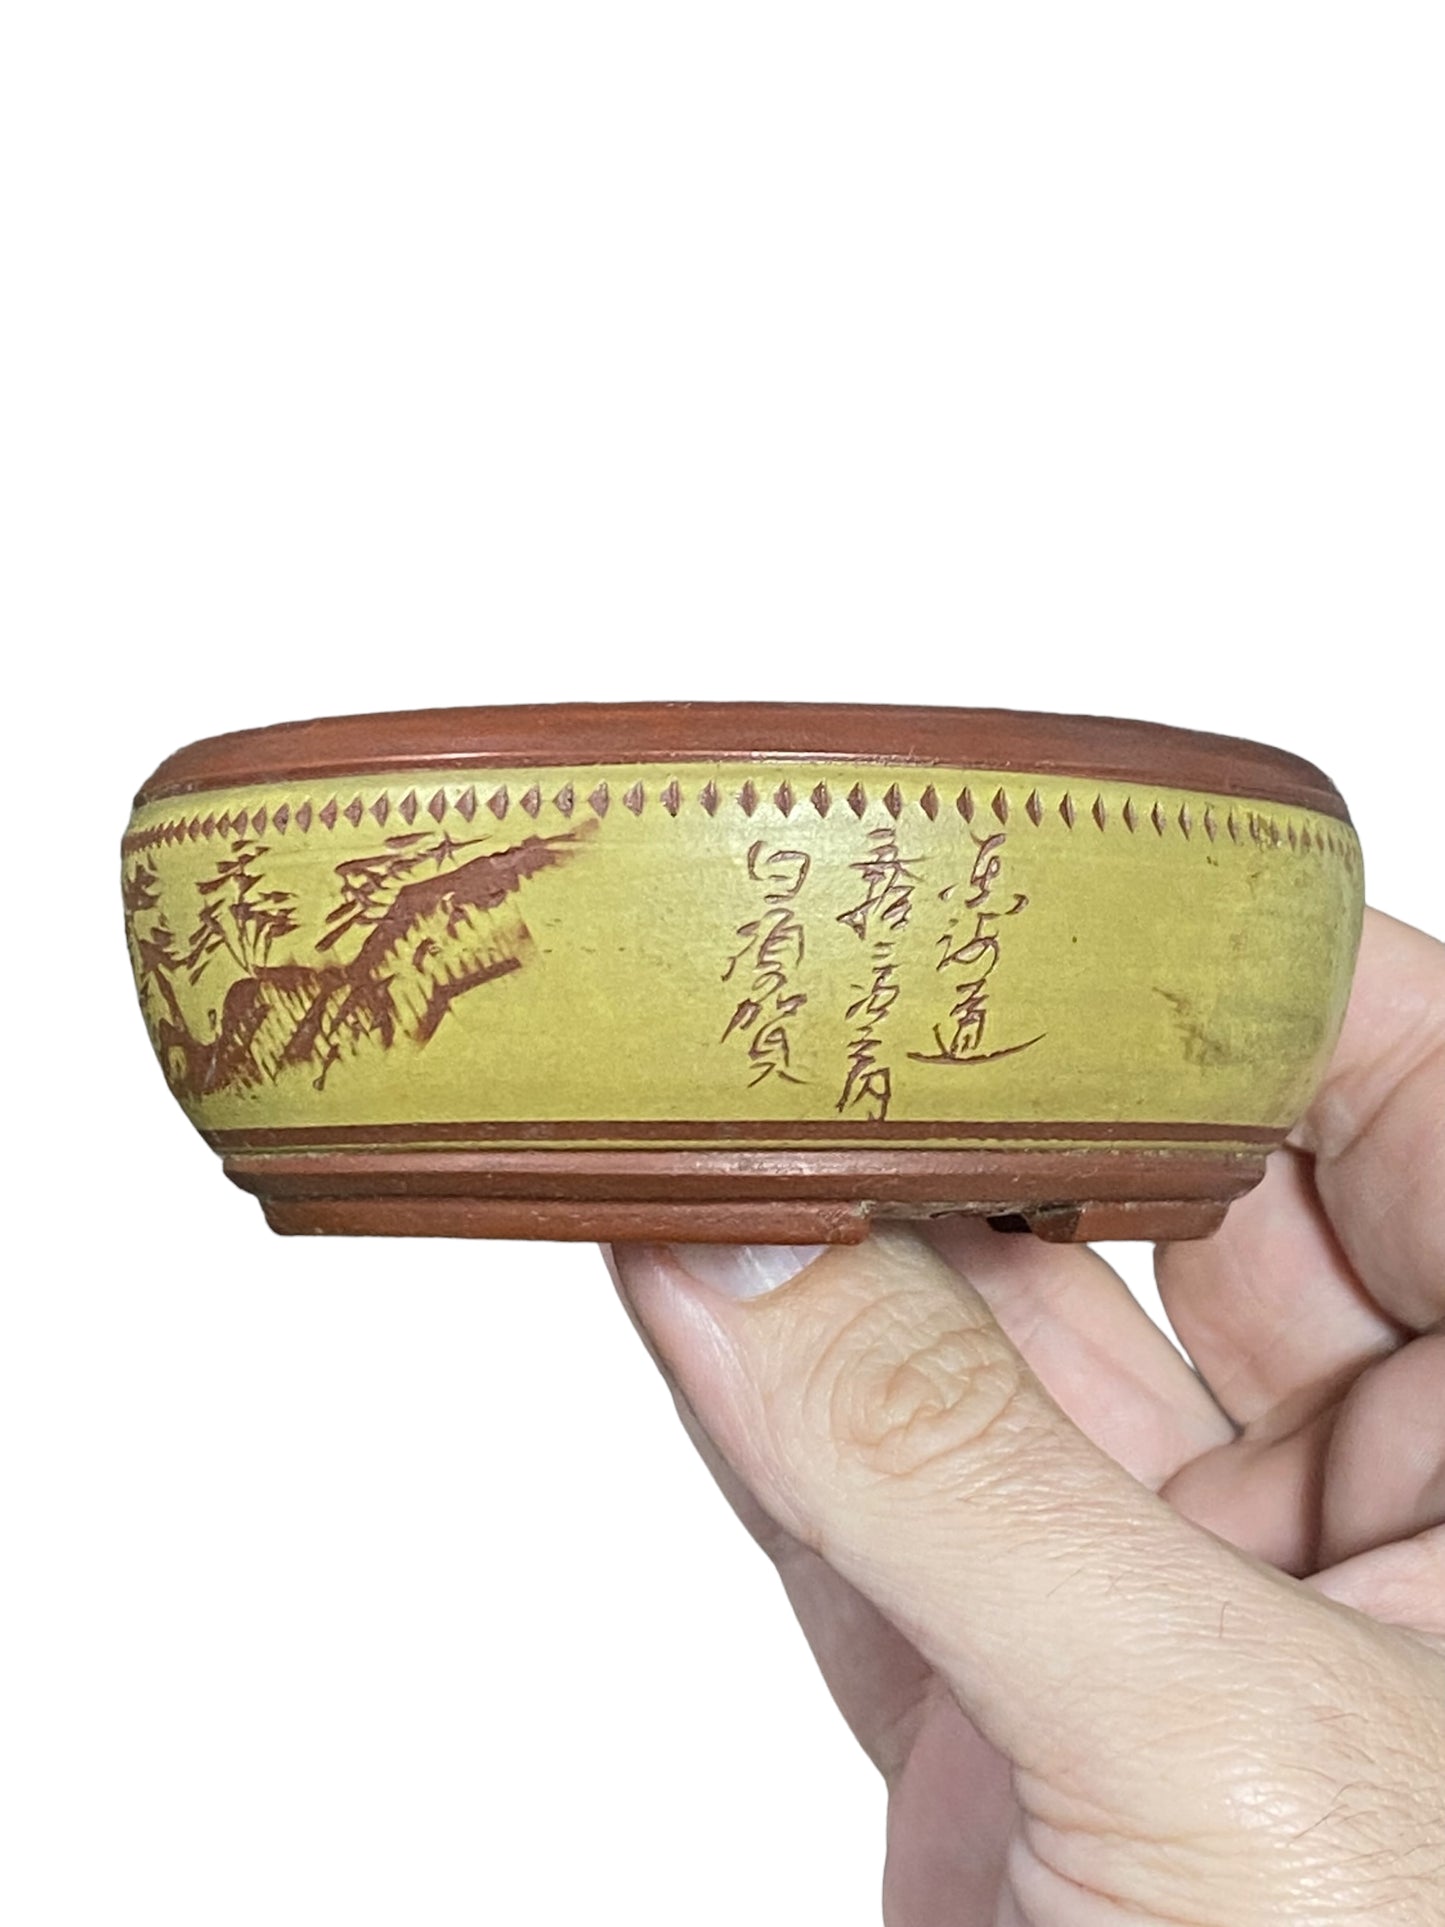 Bigei - Multicolor Carved Bowl Style Bonsai Pot